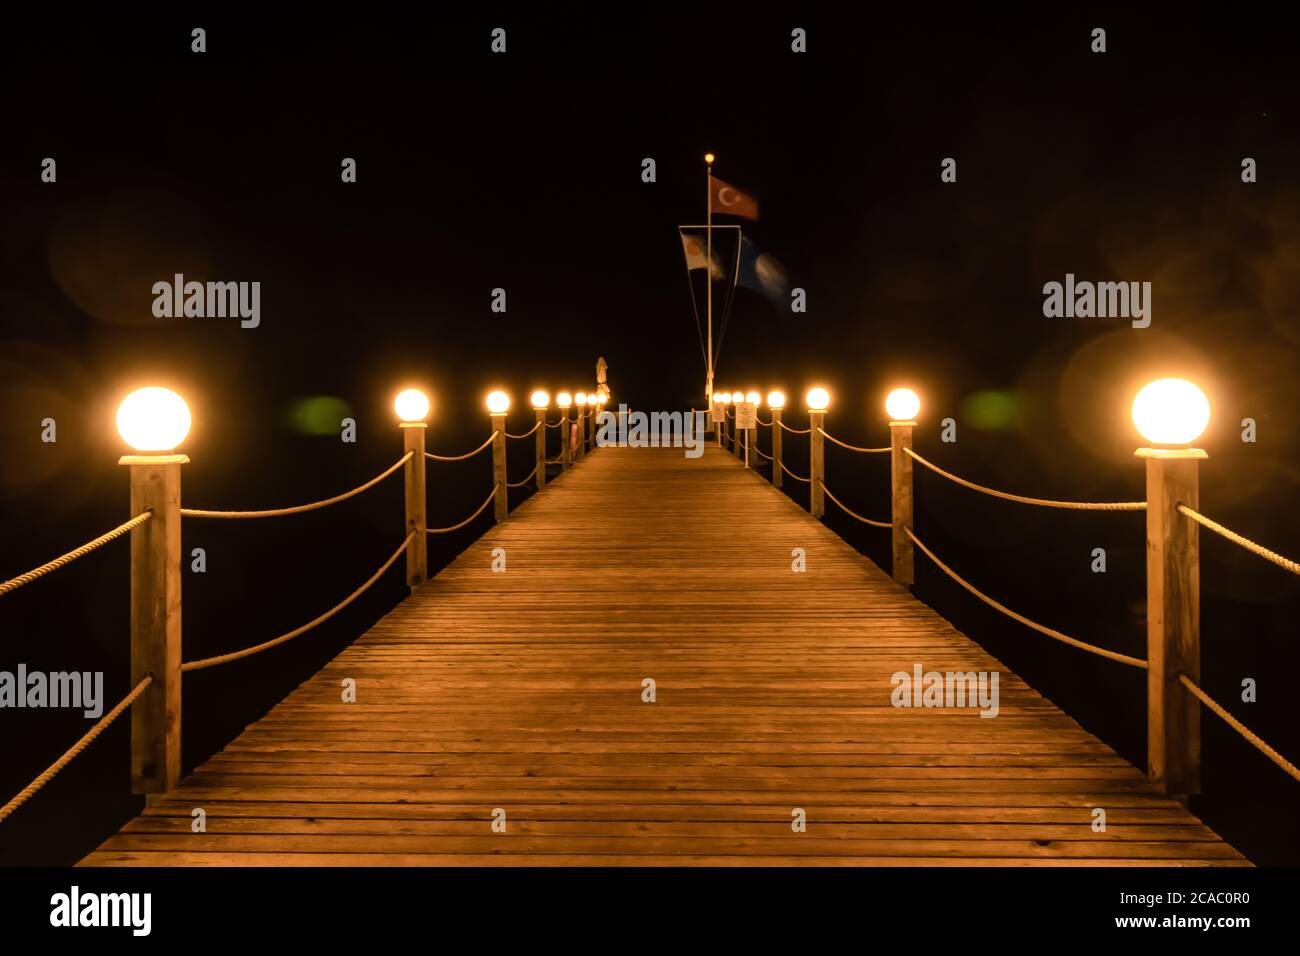 Jetée en bois illuminée la nuit, lumières sur un pont en bois au bord de la mer en Turquie. Promenade en bord de mer avec lanternes, lampes rondes. Vacances touristiques d'été Banque D'Images